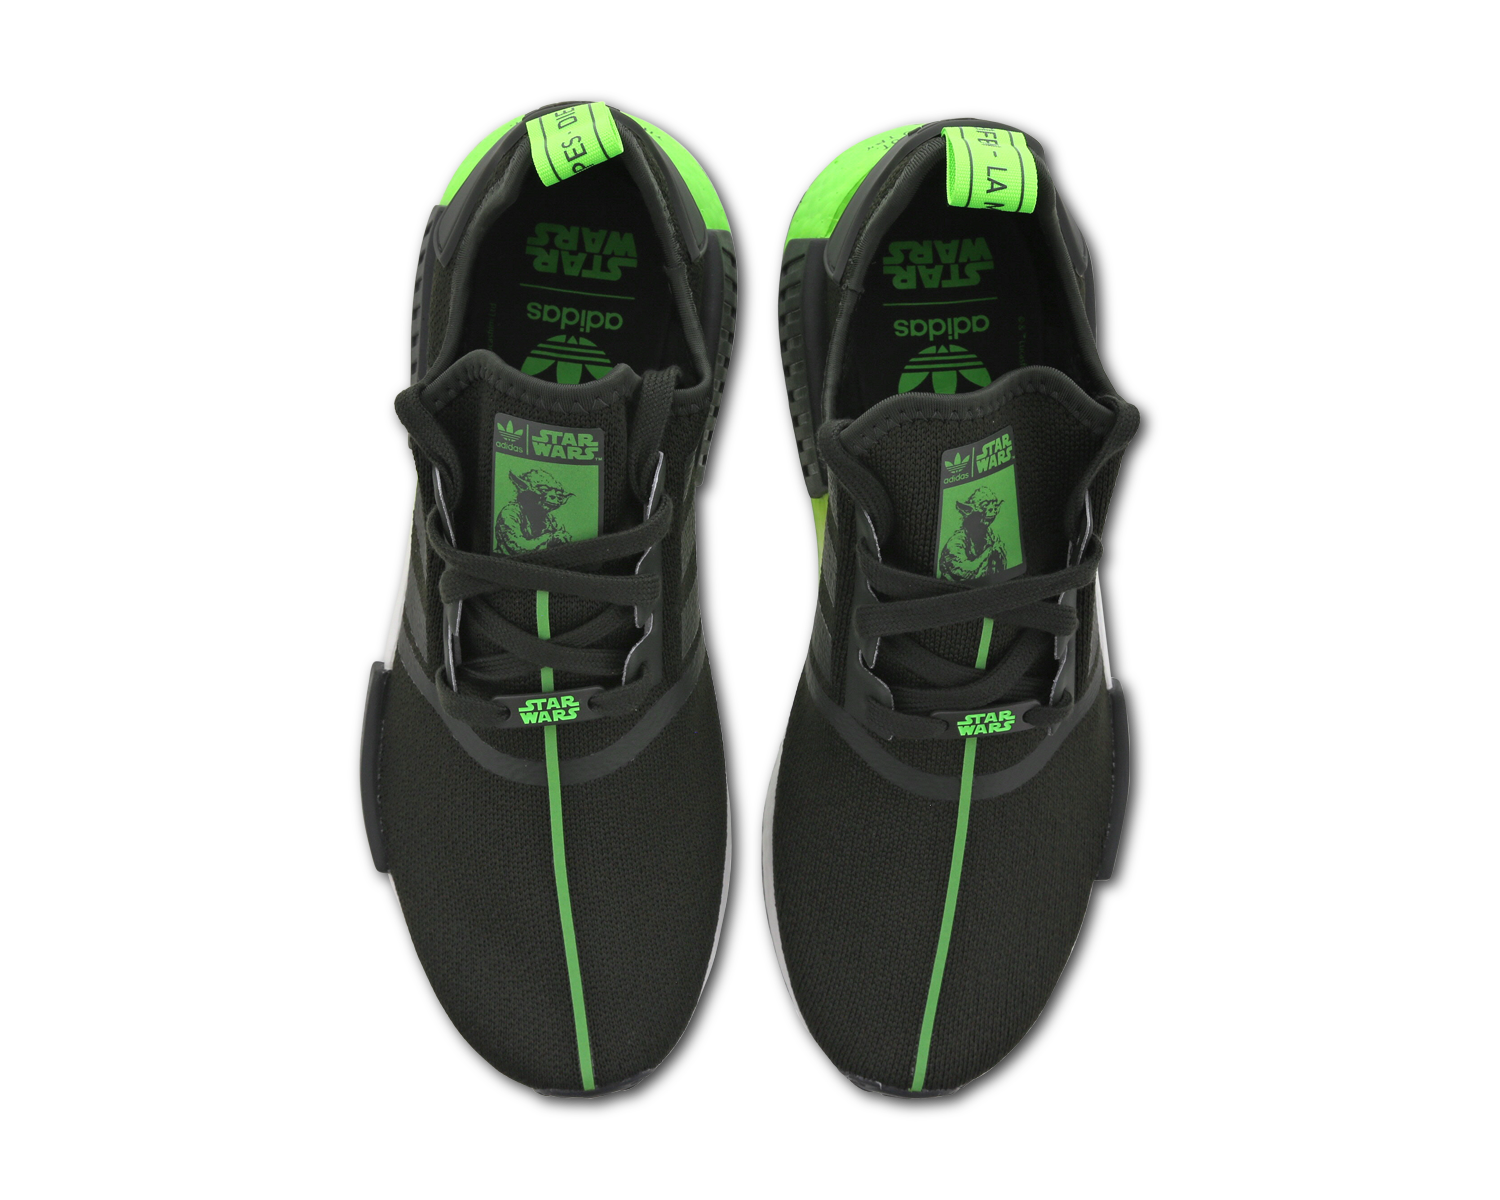 Adidas NMD R1 Primeknit Sneakers HK $ 1 975 Overseas